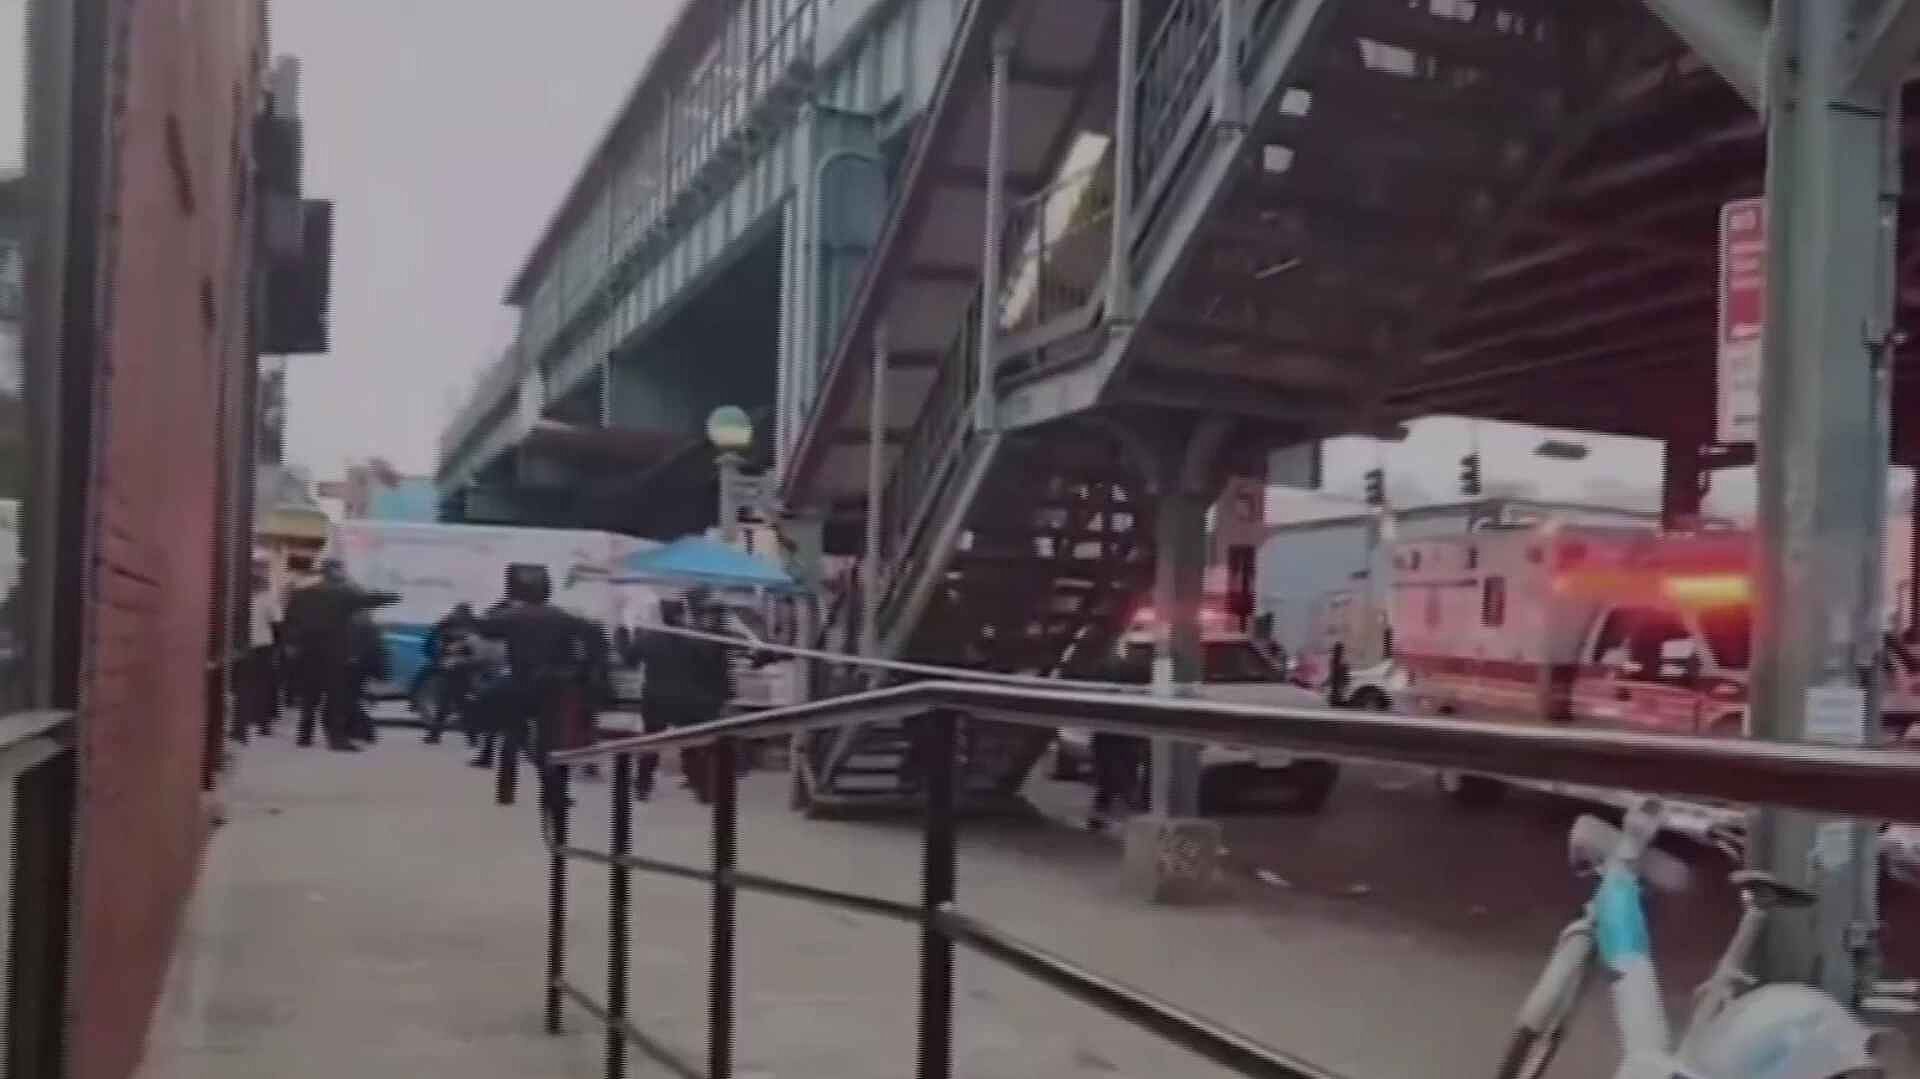 Balacera en metro de NY deja un muerto y 5 heridos graves